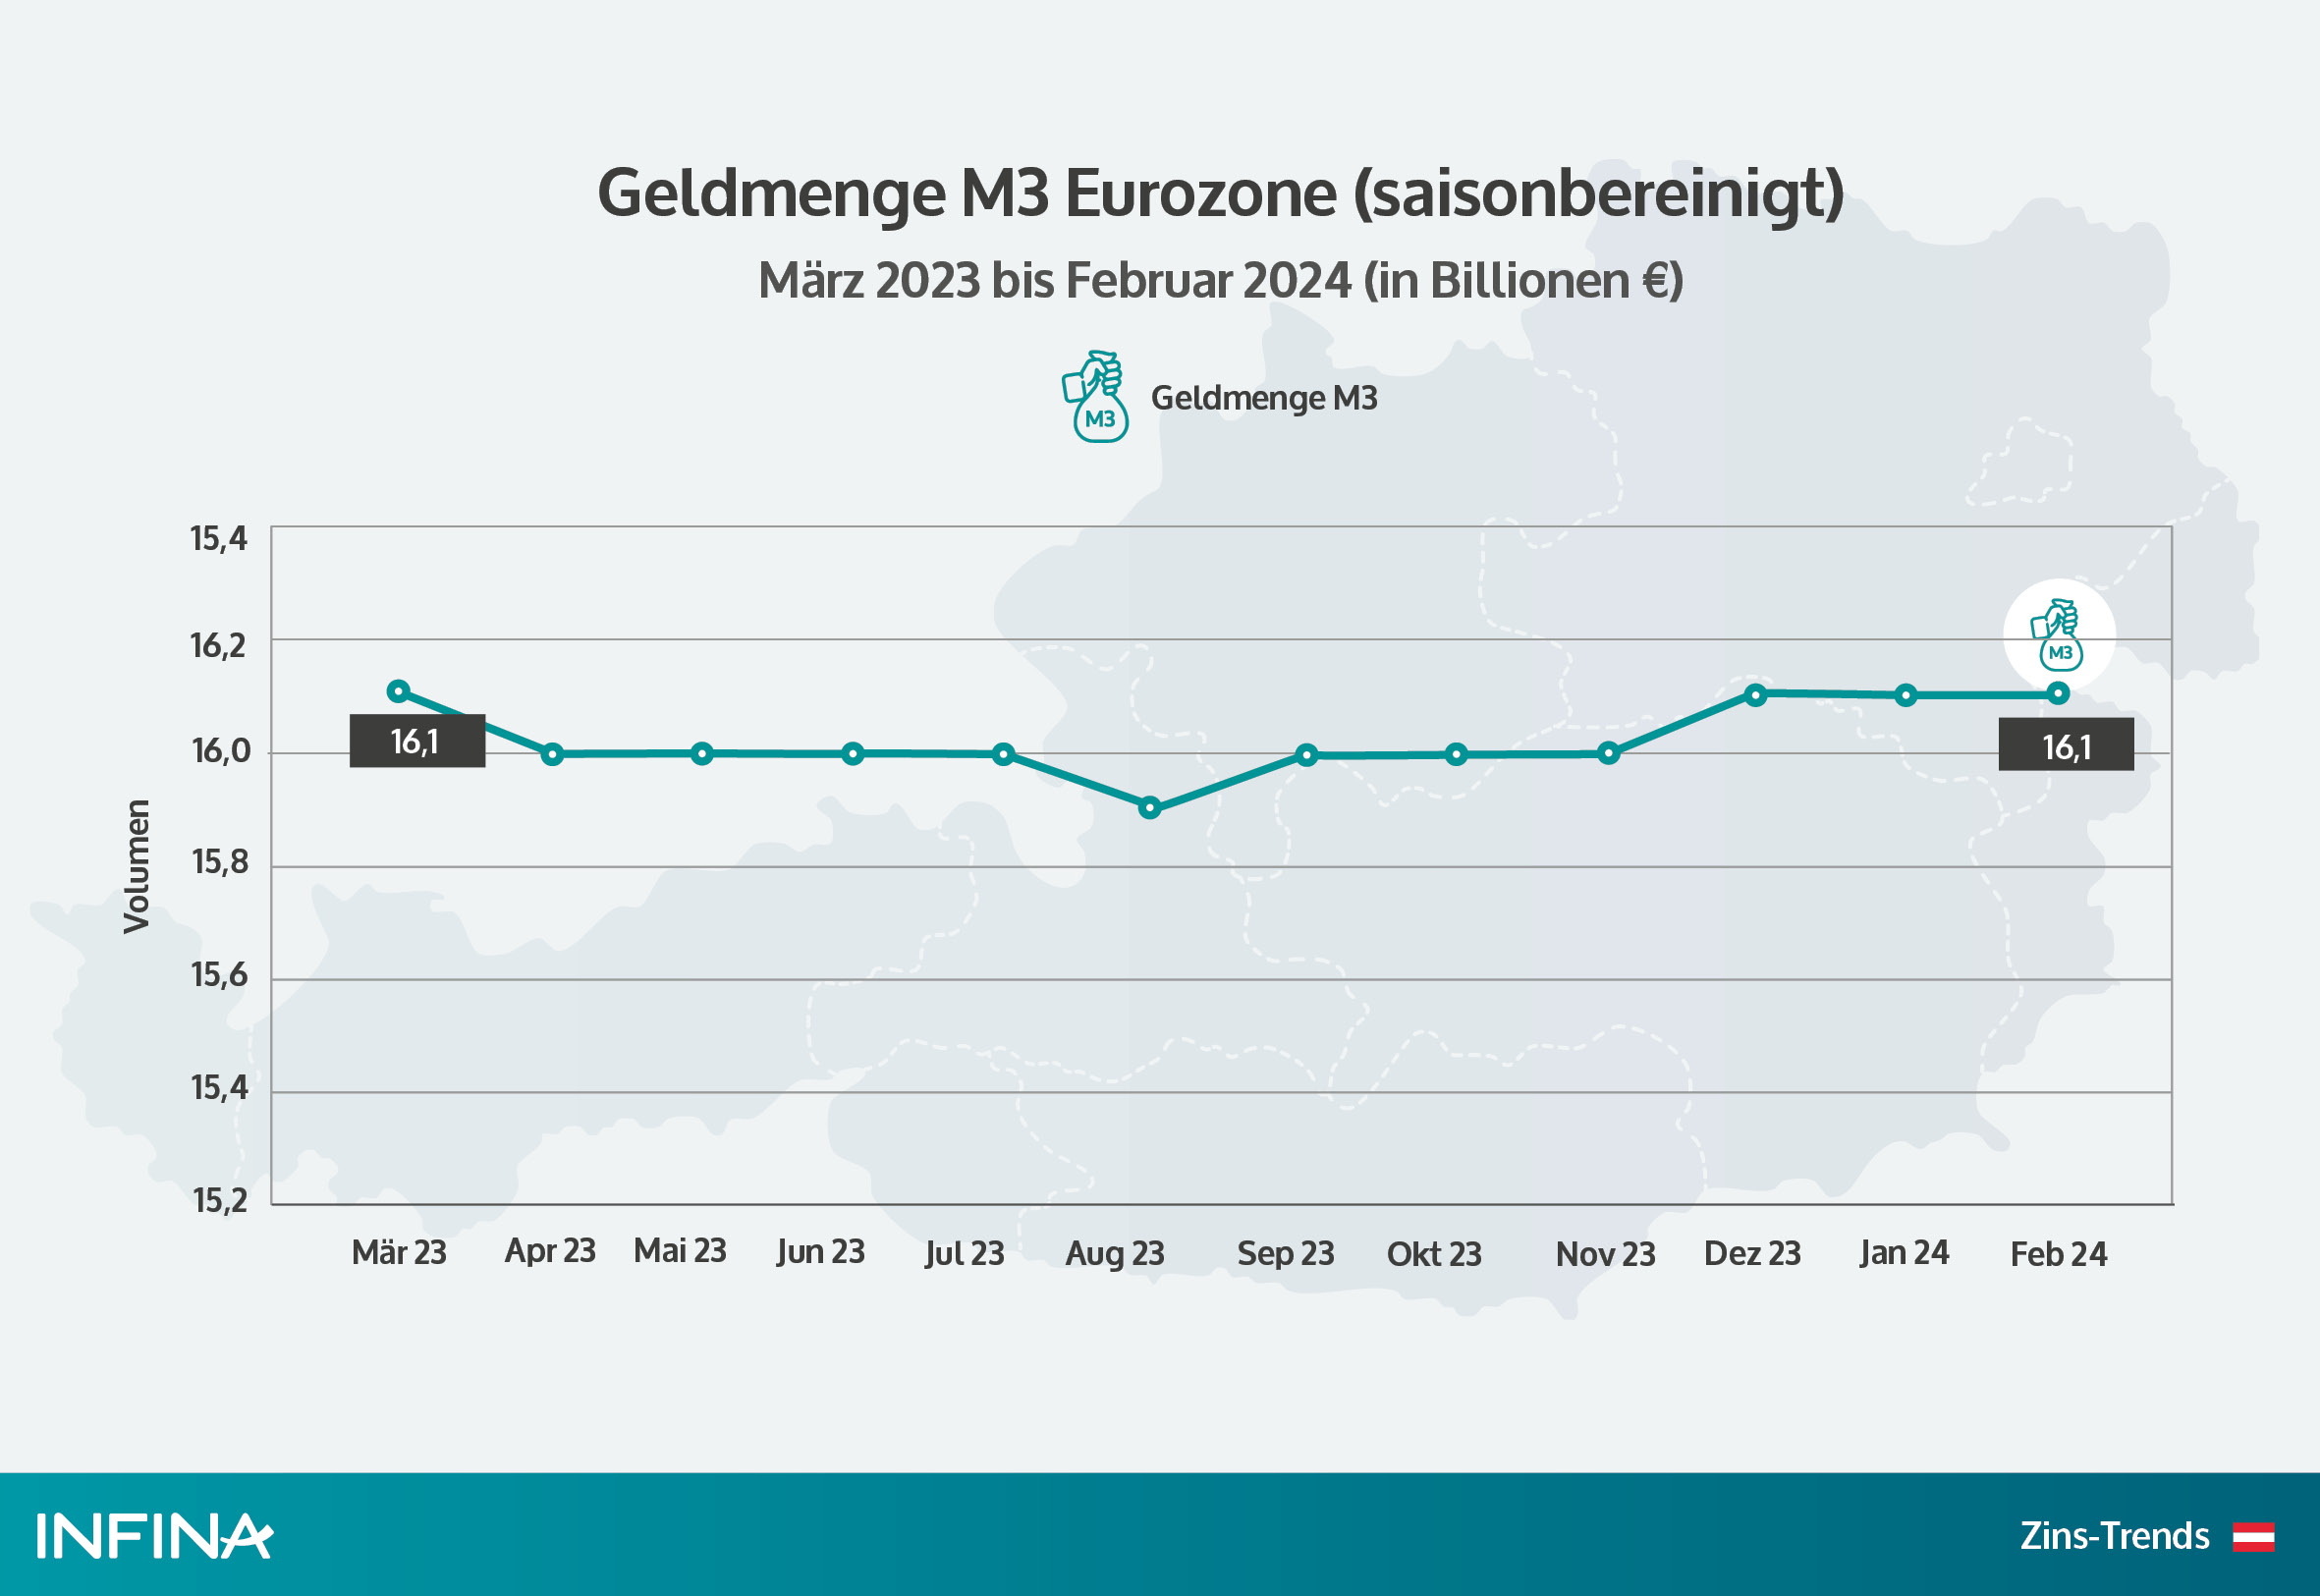 Geldmenge M3 Eurozone in den letzten 12 Monaten